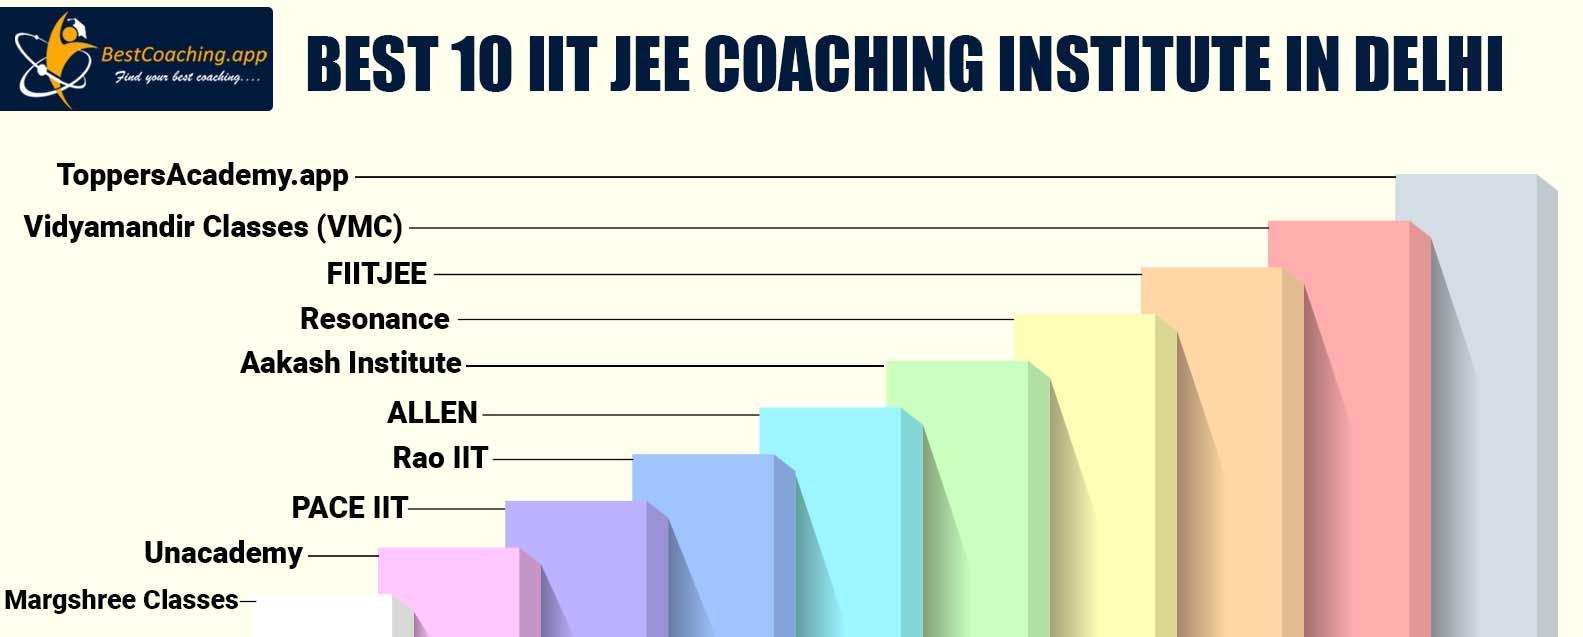 Best 10 IIT JEE Coaching Institute in Delhi